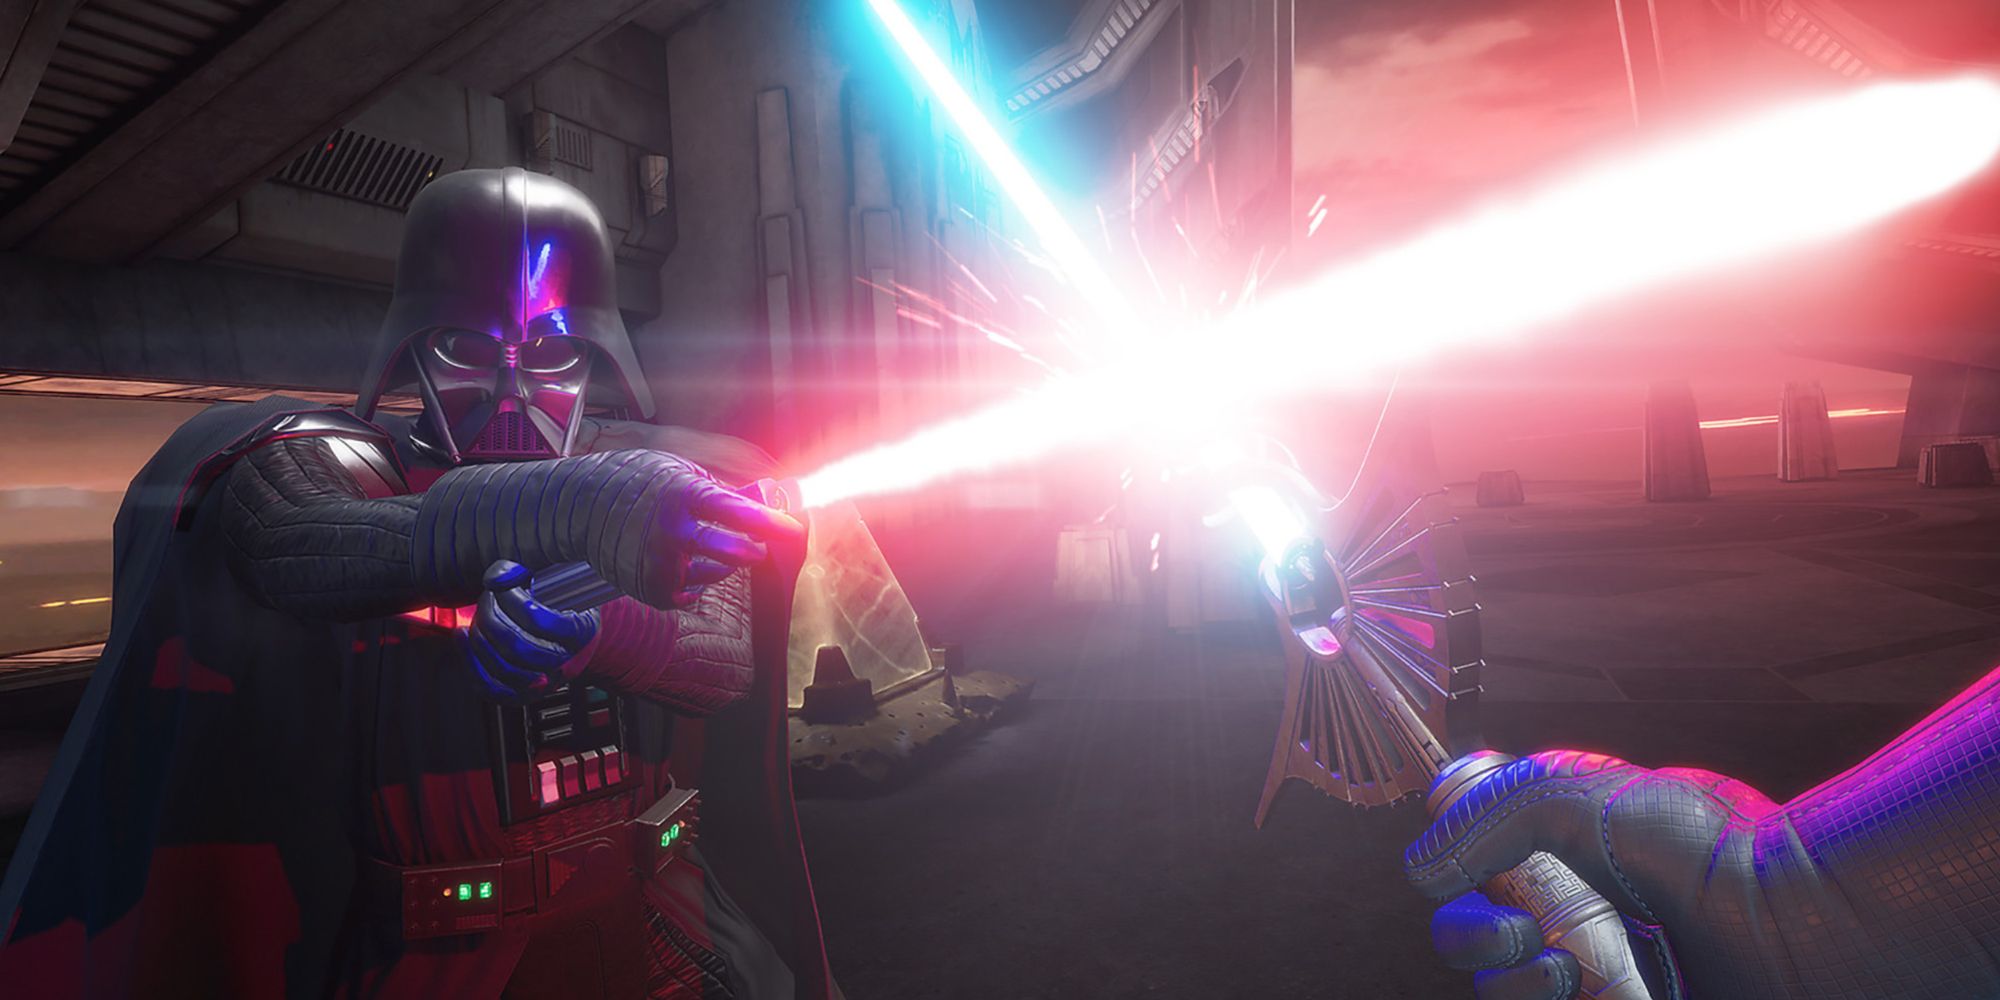 Facing Darth Vader in a lightsaber duel in Vader Immortal A Star Wars VR Series